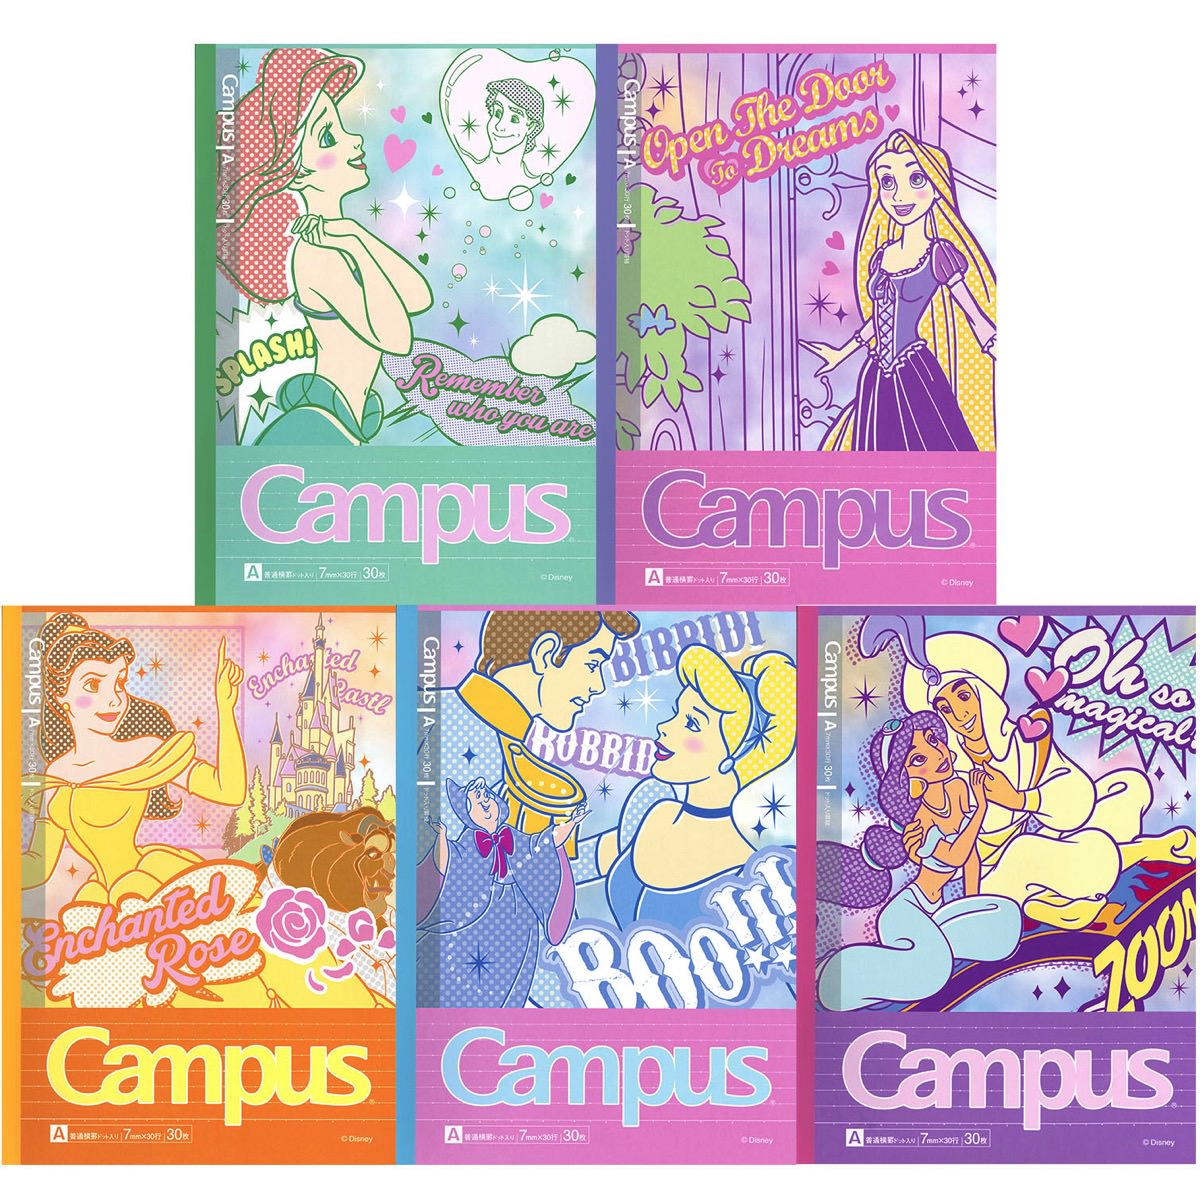 ディズニープリンセスのポップな絵柄がかわいい♡サンスター文具Campus(キャンパスノート)